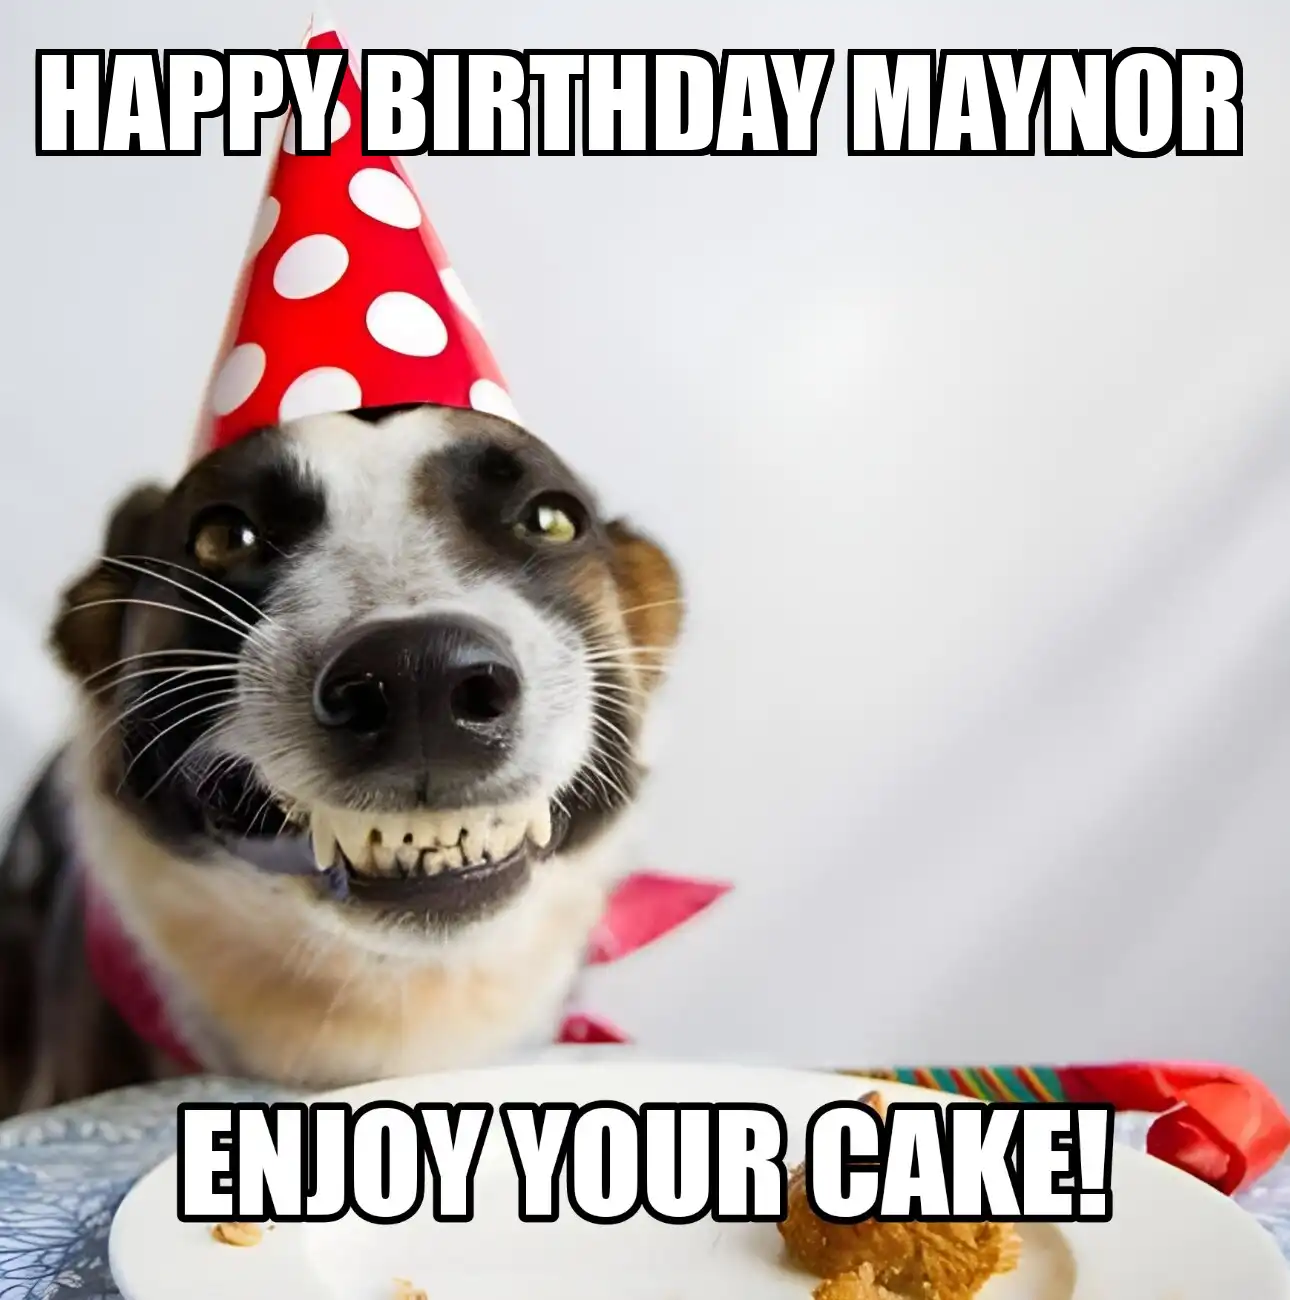 Happy Birthday Maynor Enjoy Your Cake Dog Meme